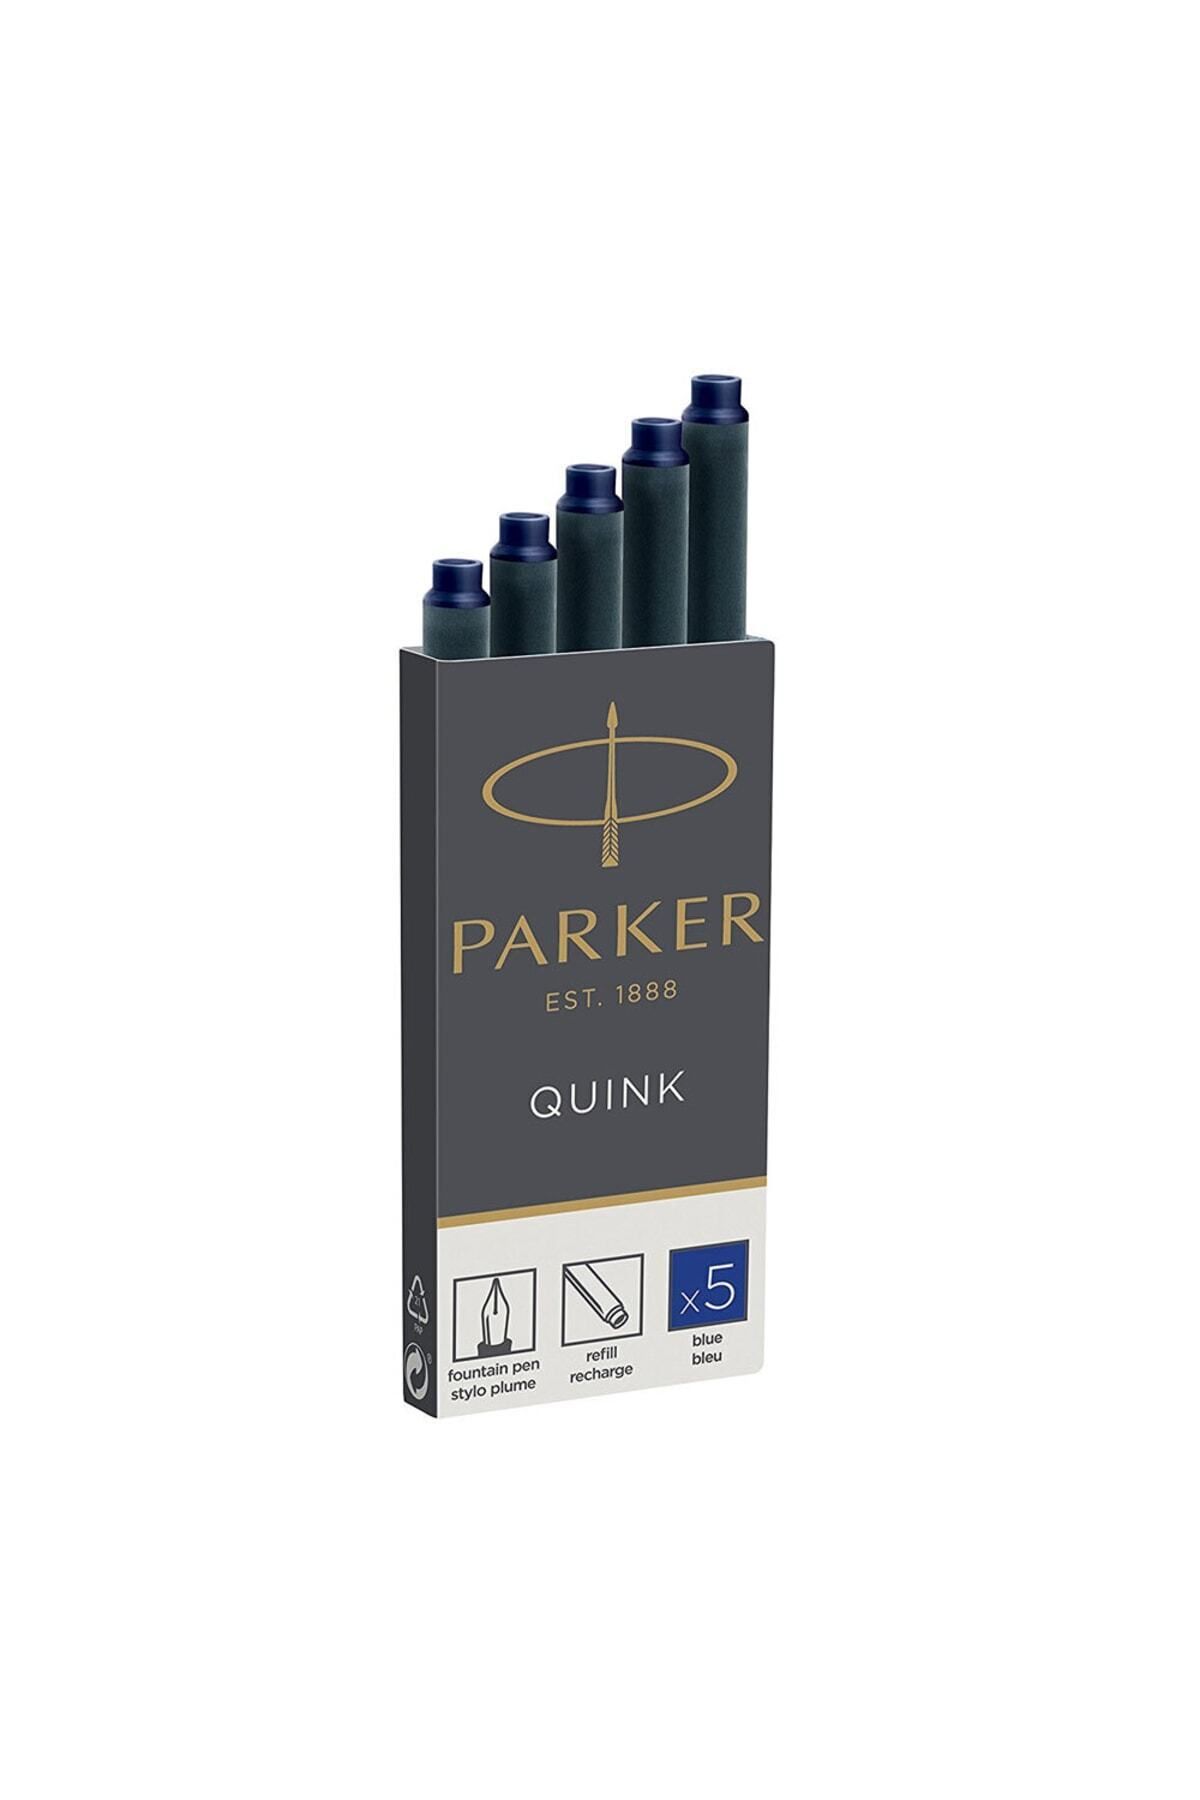 Parker Quink 5li Kartuş Mavi 1950384